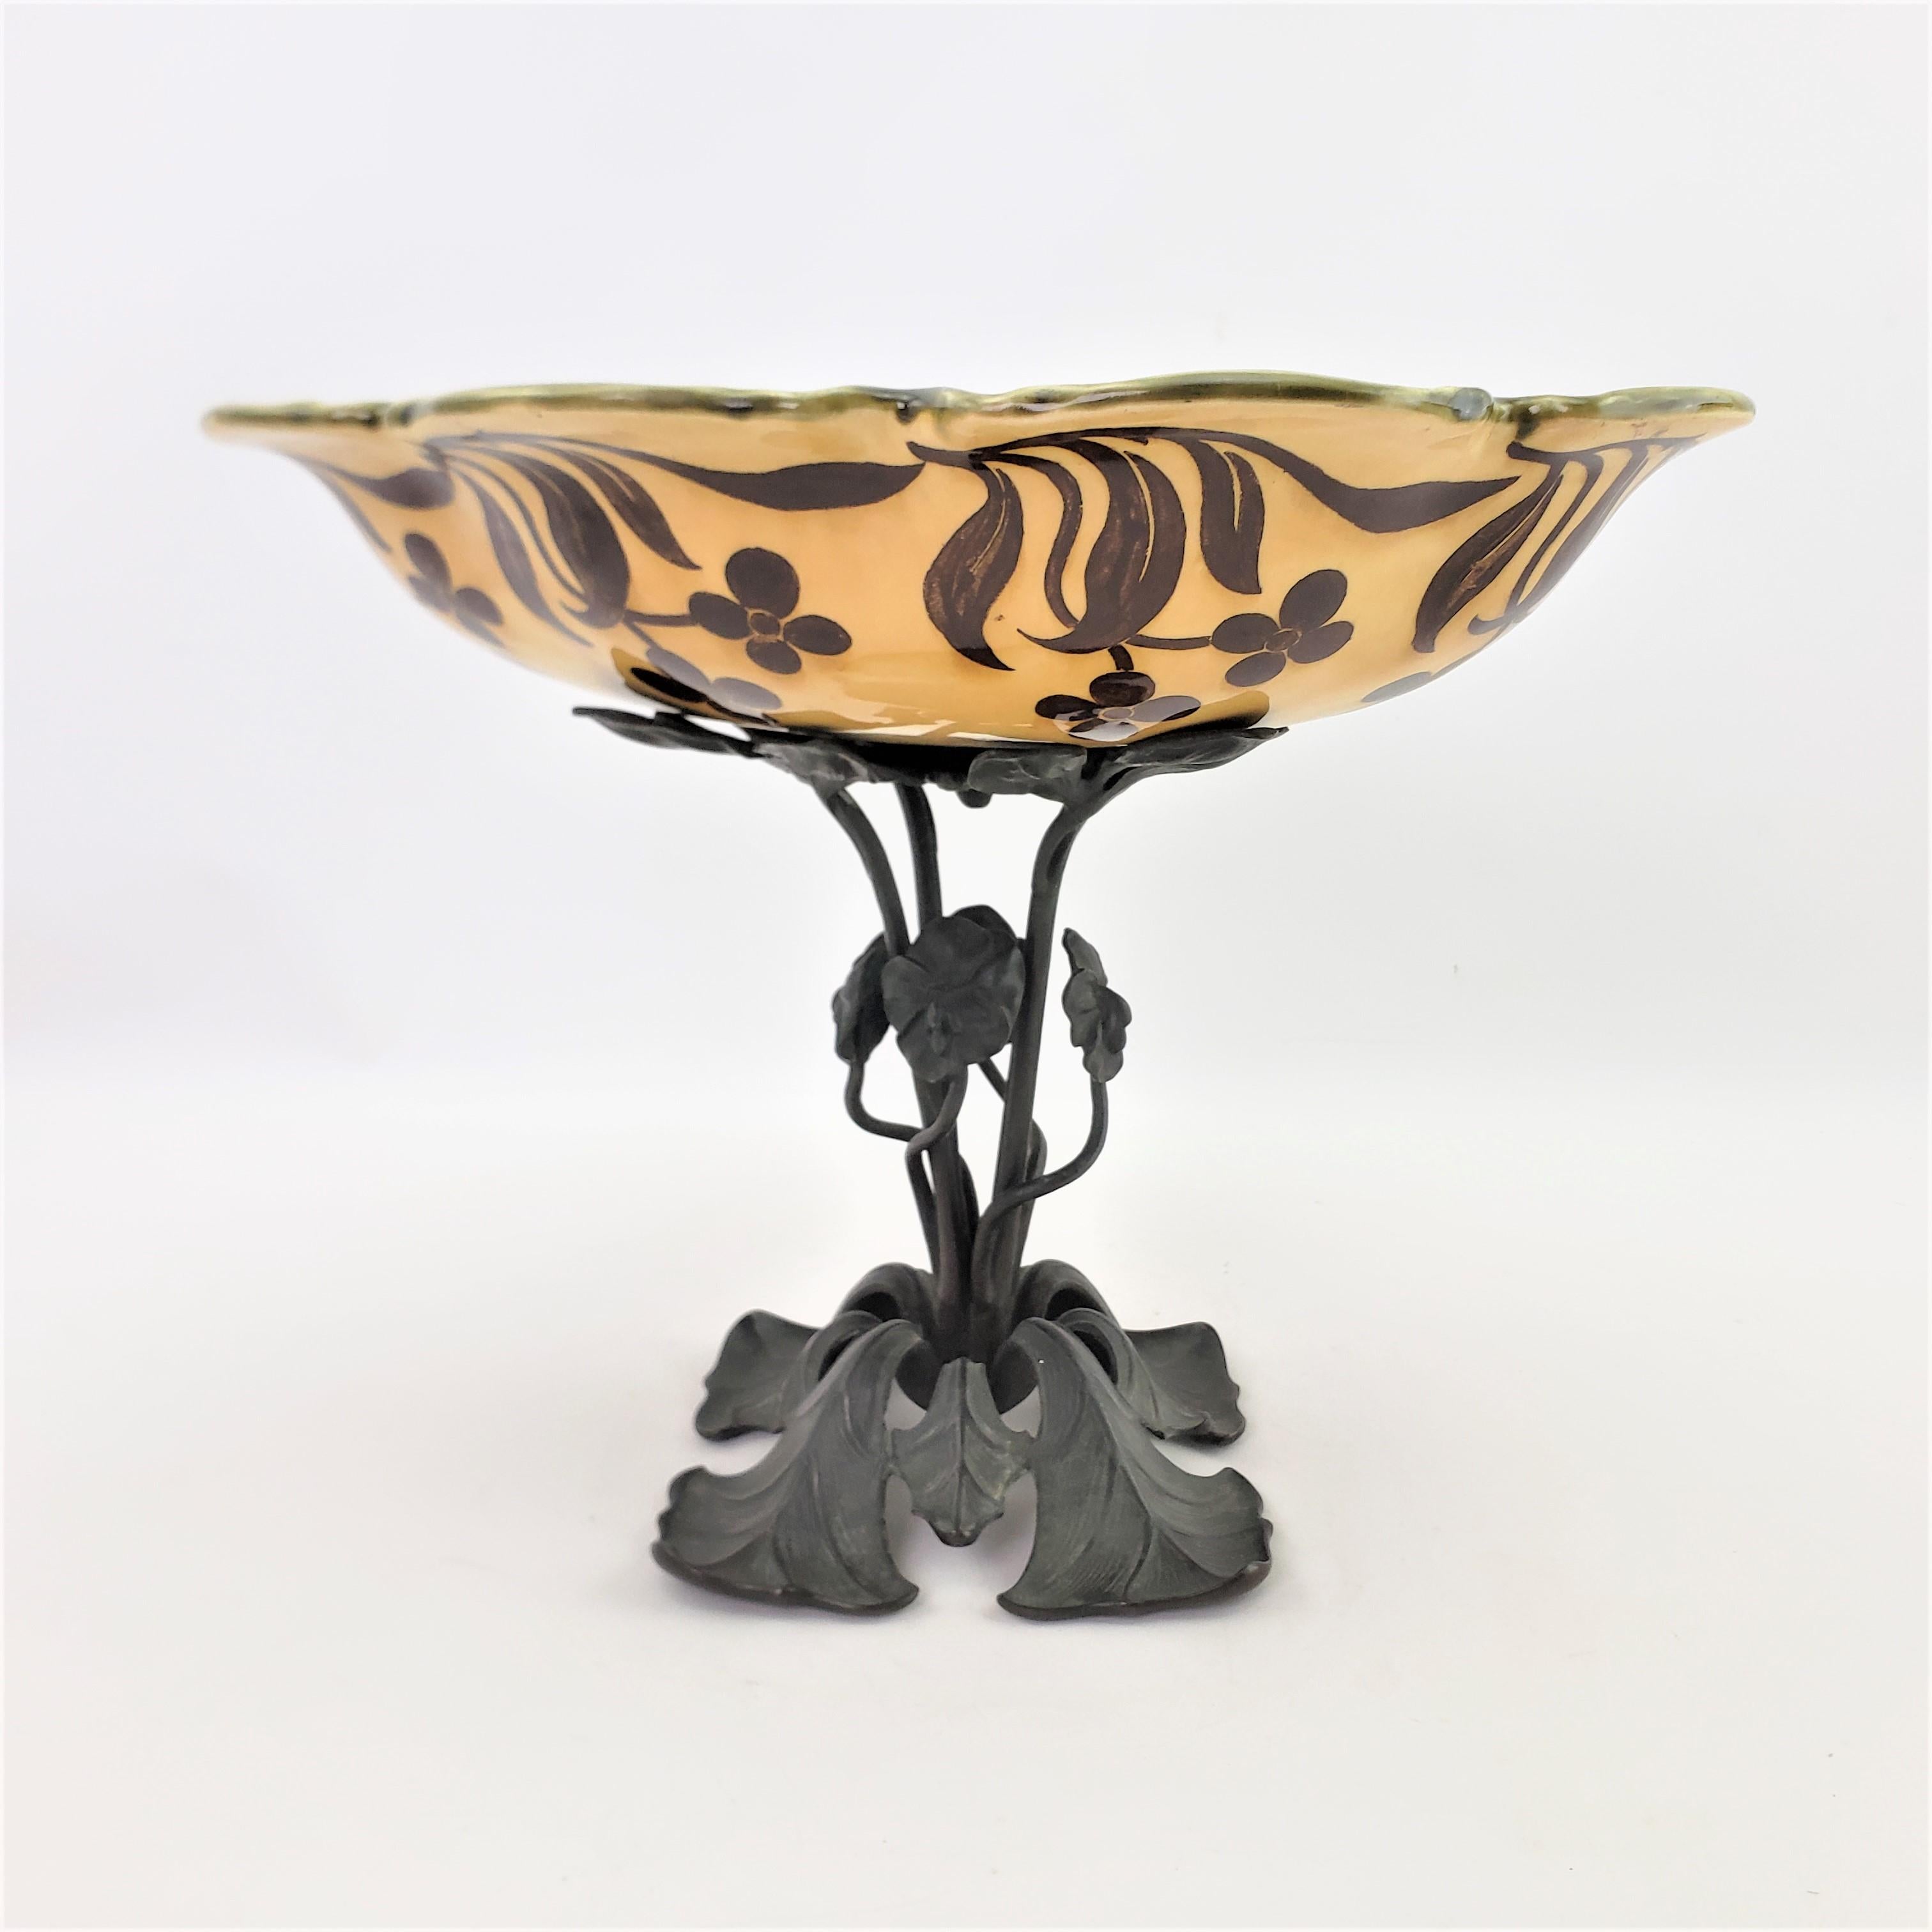 20th Century Antique Art Nouveau Cast Bronze & Ceramic Pedestal Bowl, Tazza or Centerpiece For Sale